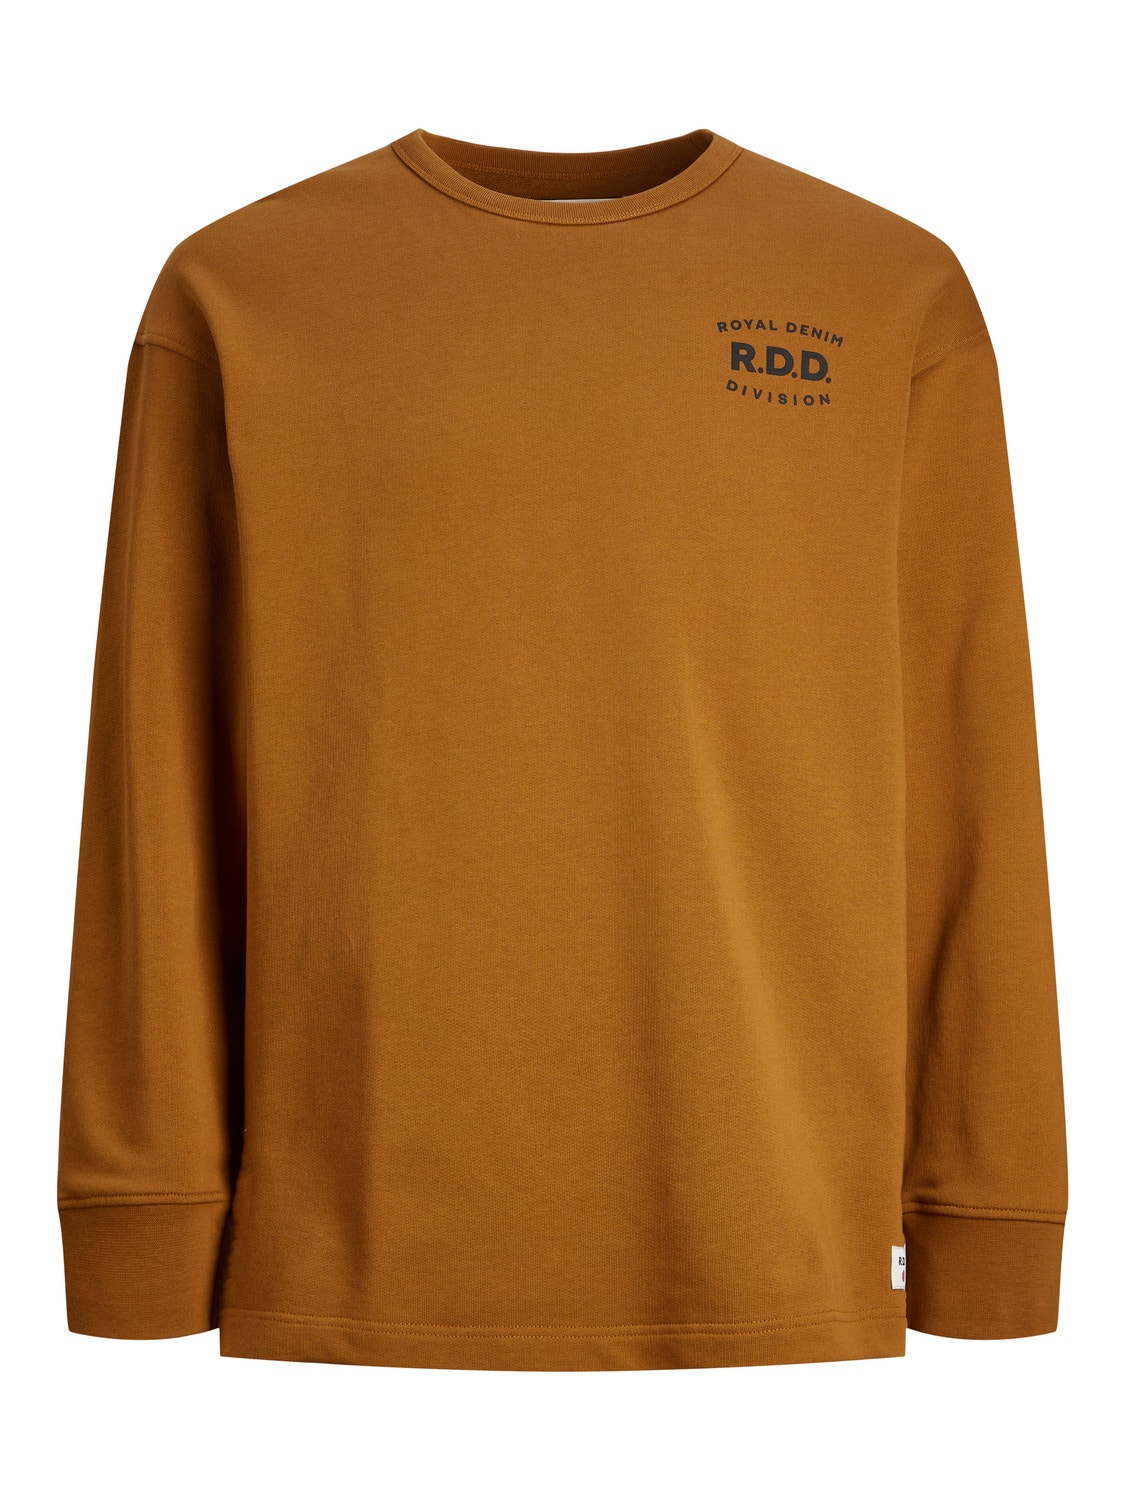 Jack & Jones RDD Gedruckt Sweatshirt mit Rundhals -Caramel Café - 12243501